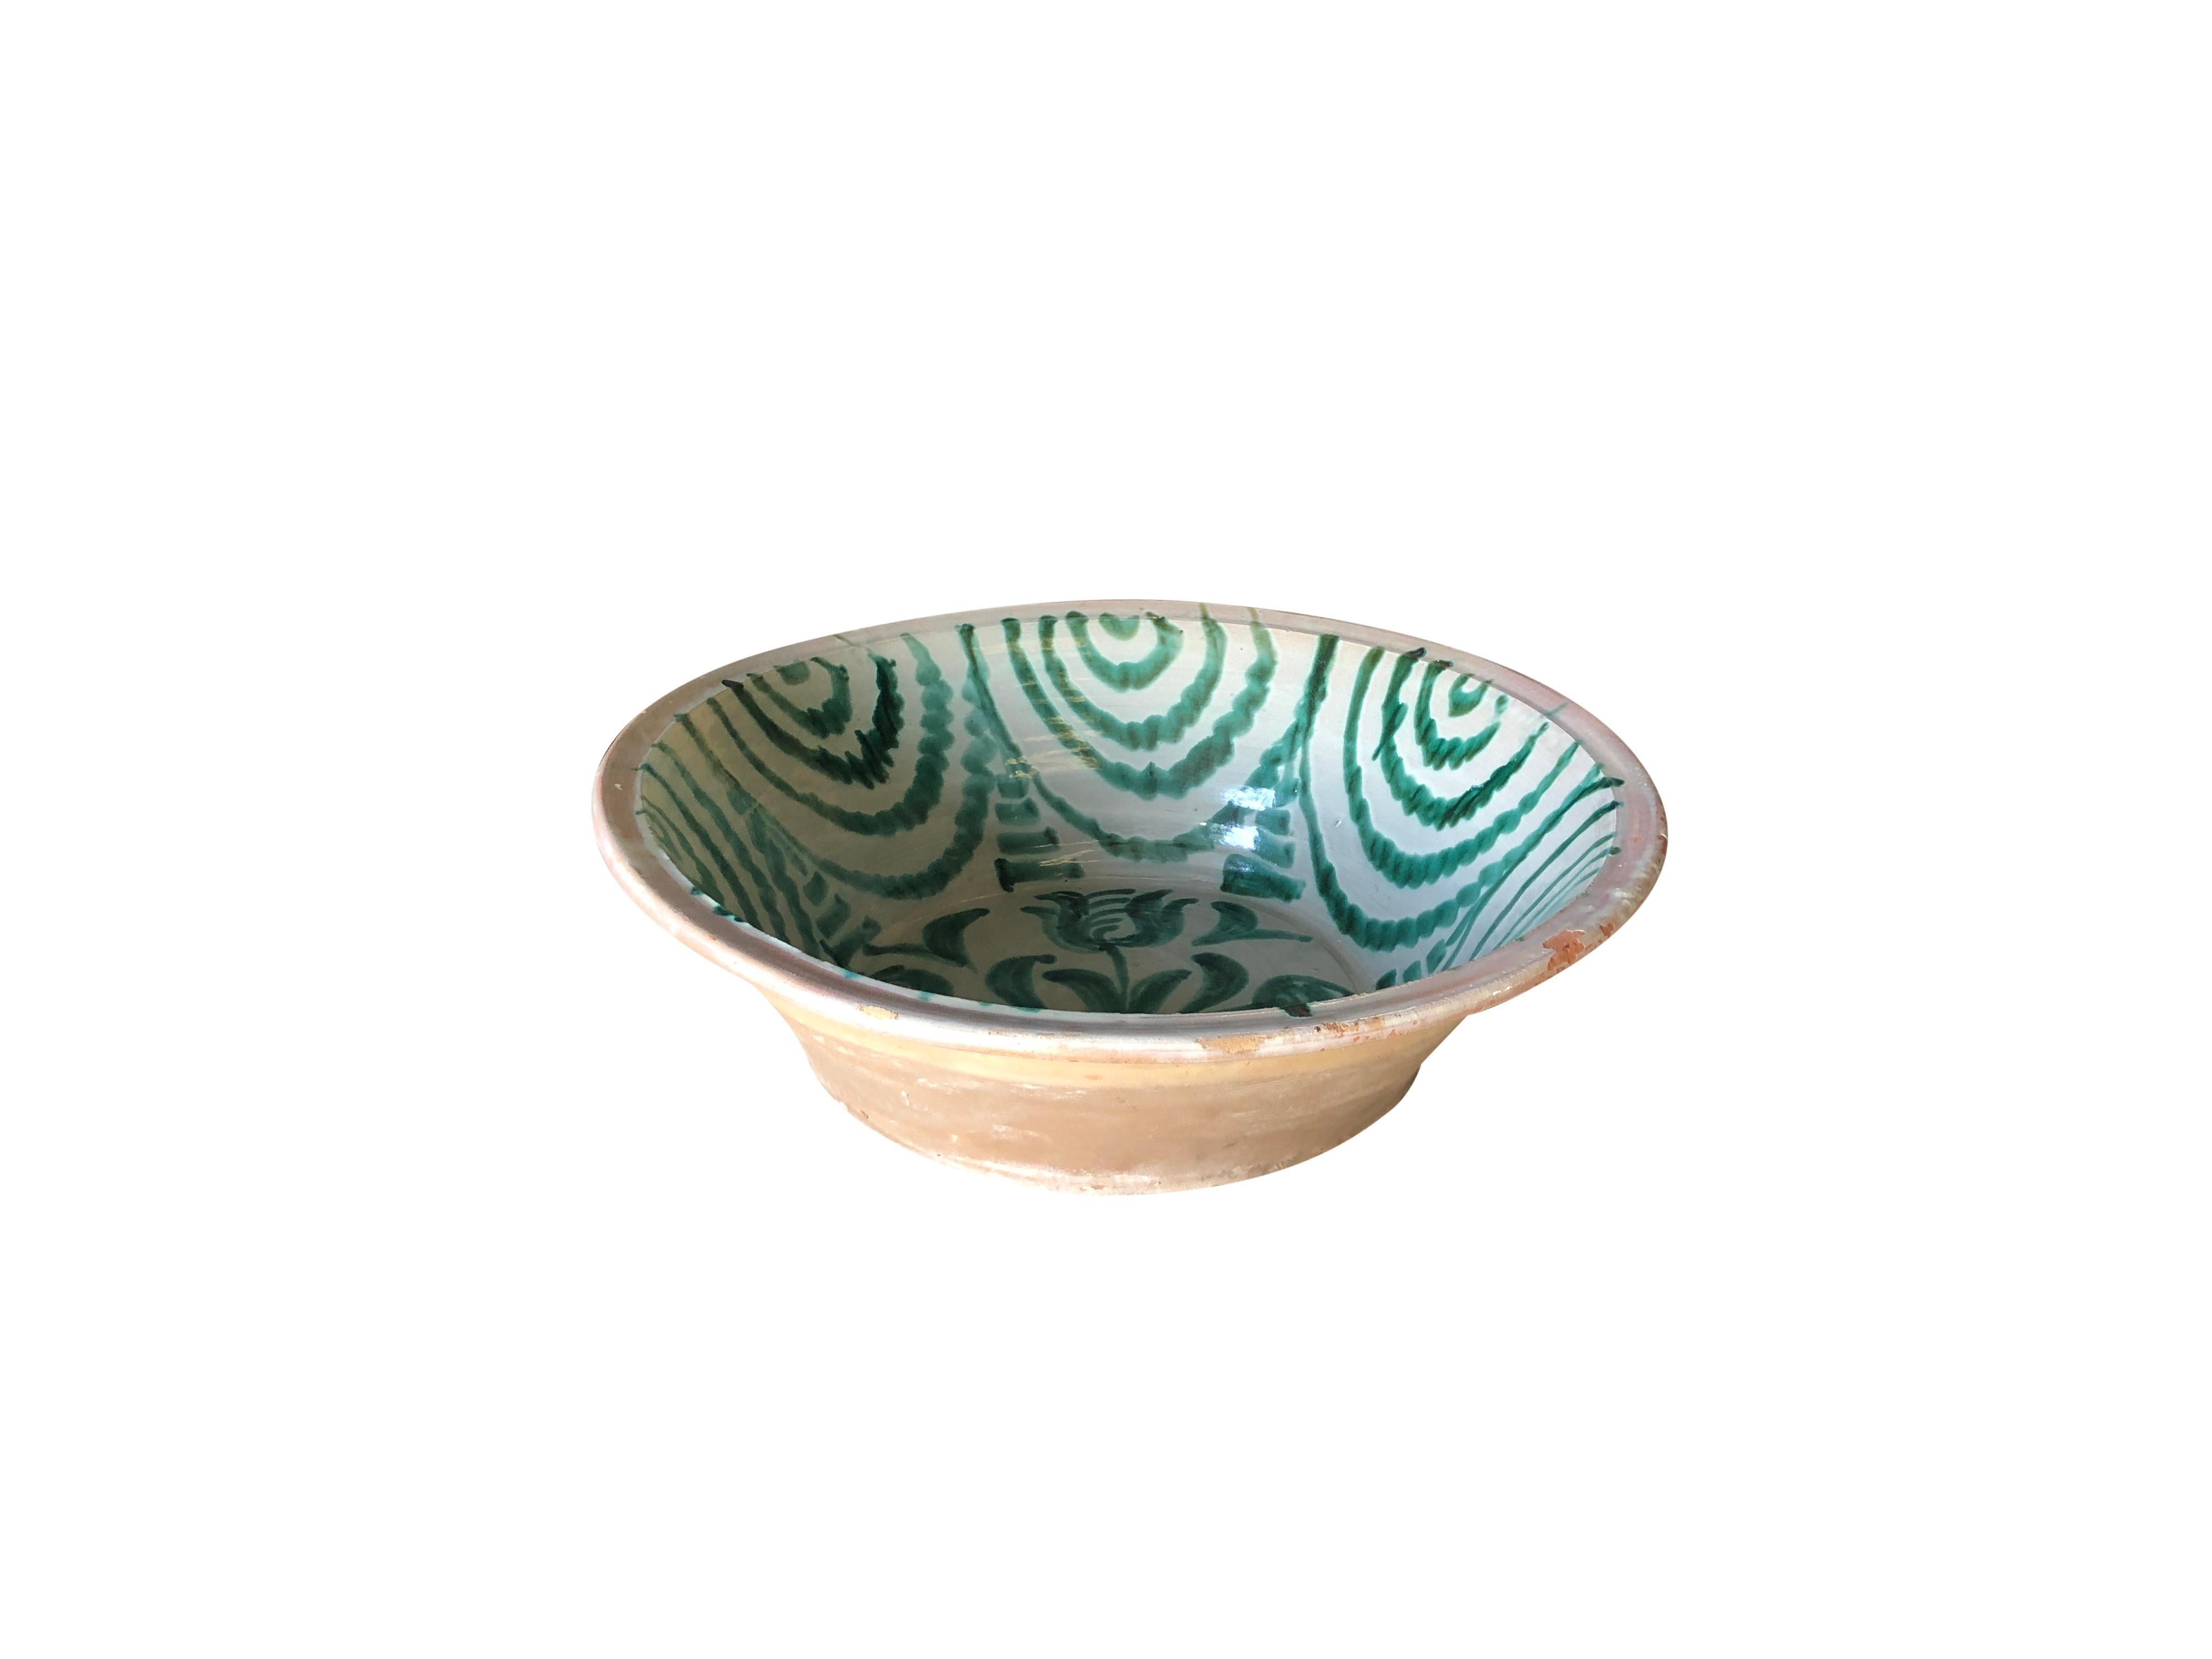 Hand-Crafted 18th-19th Century Granada Lebrillo Bowl, Spanish Terracotta Decor